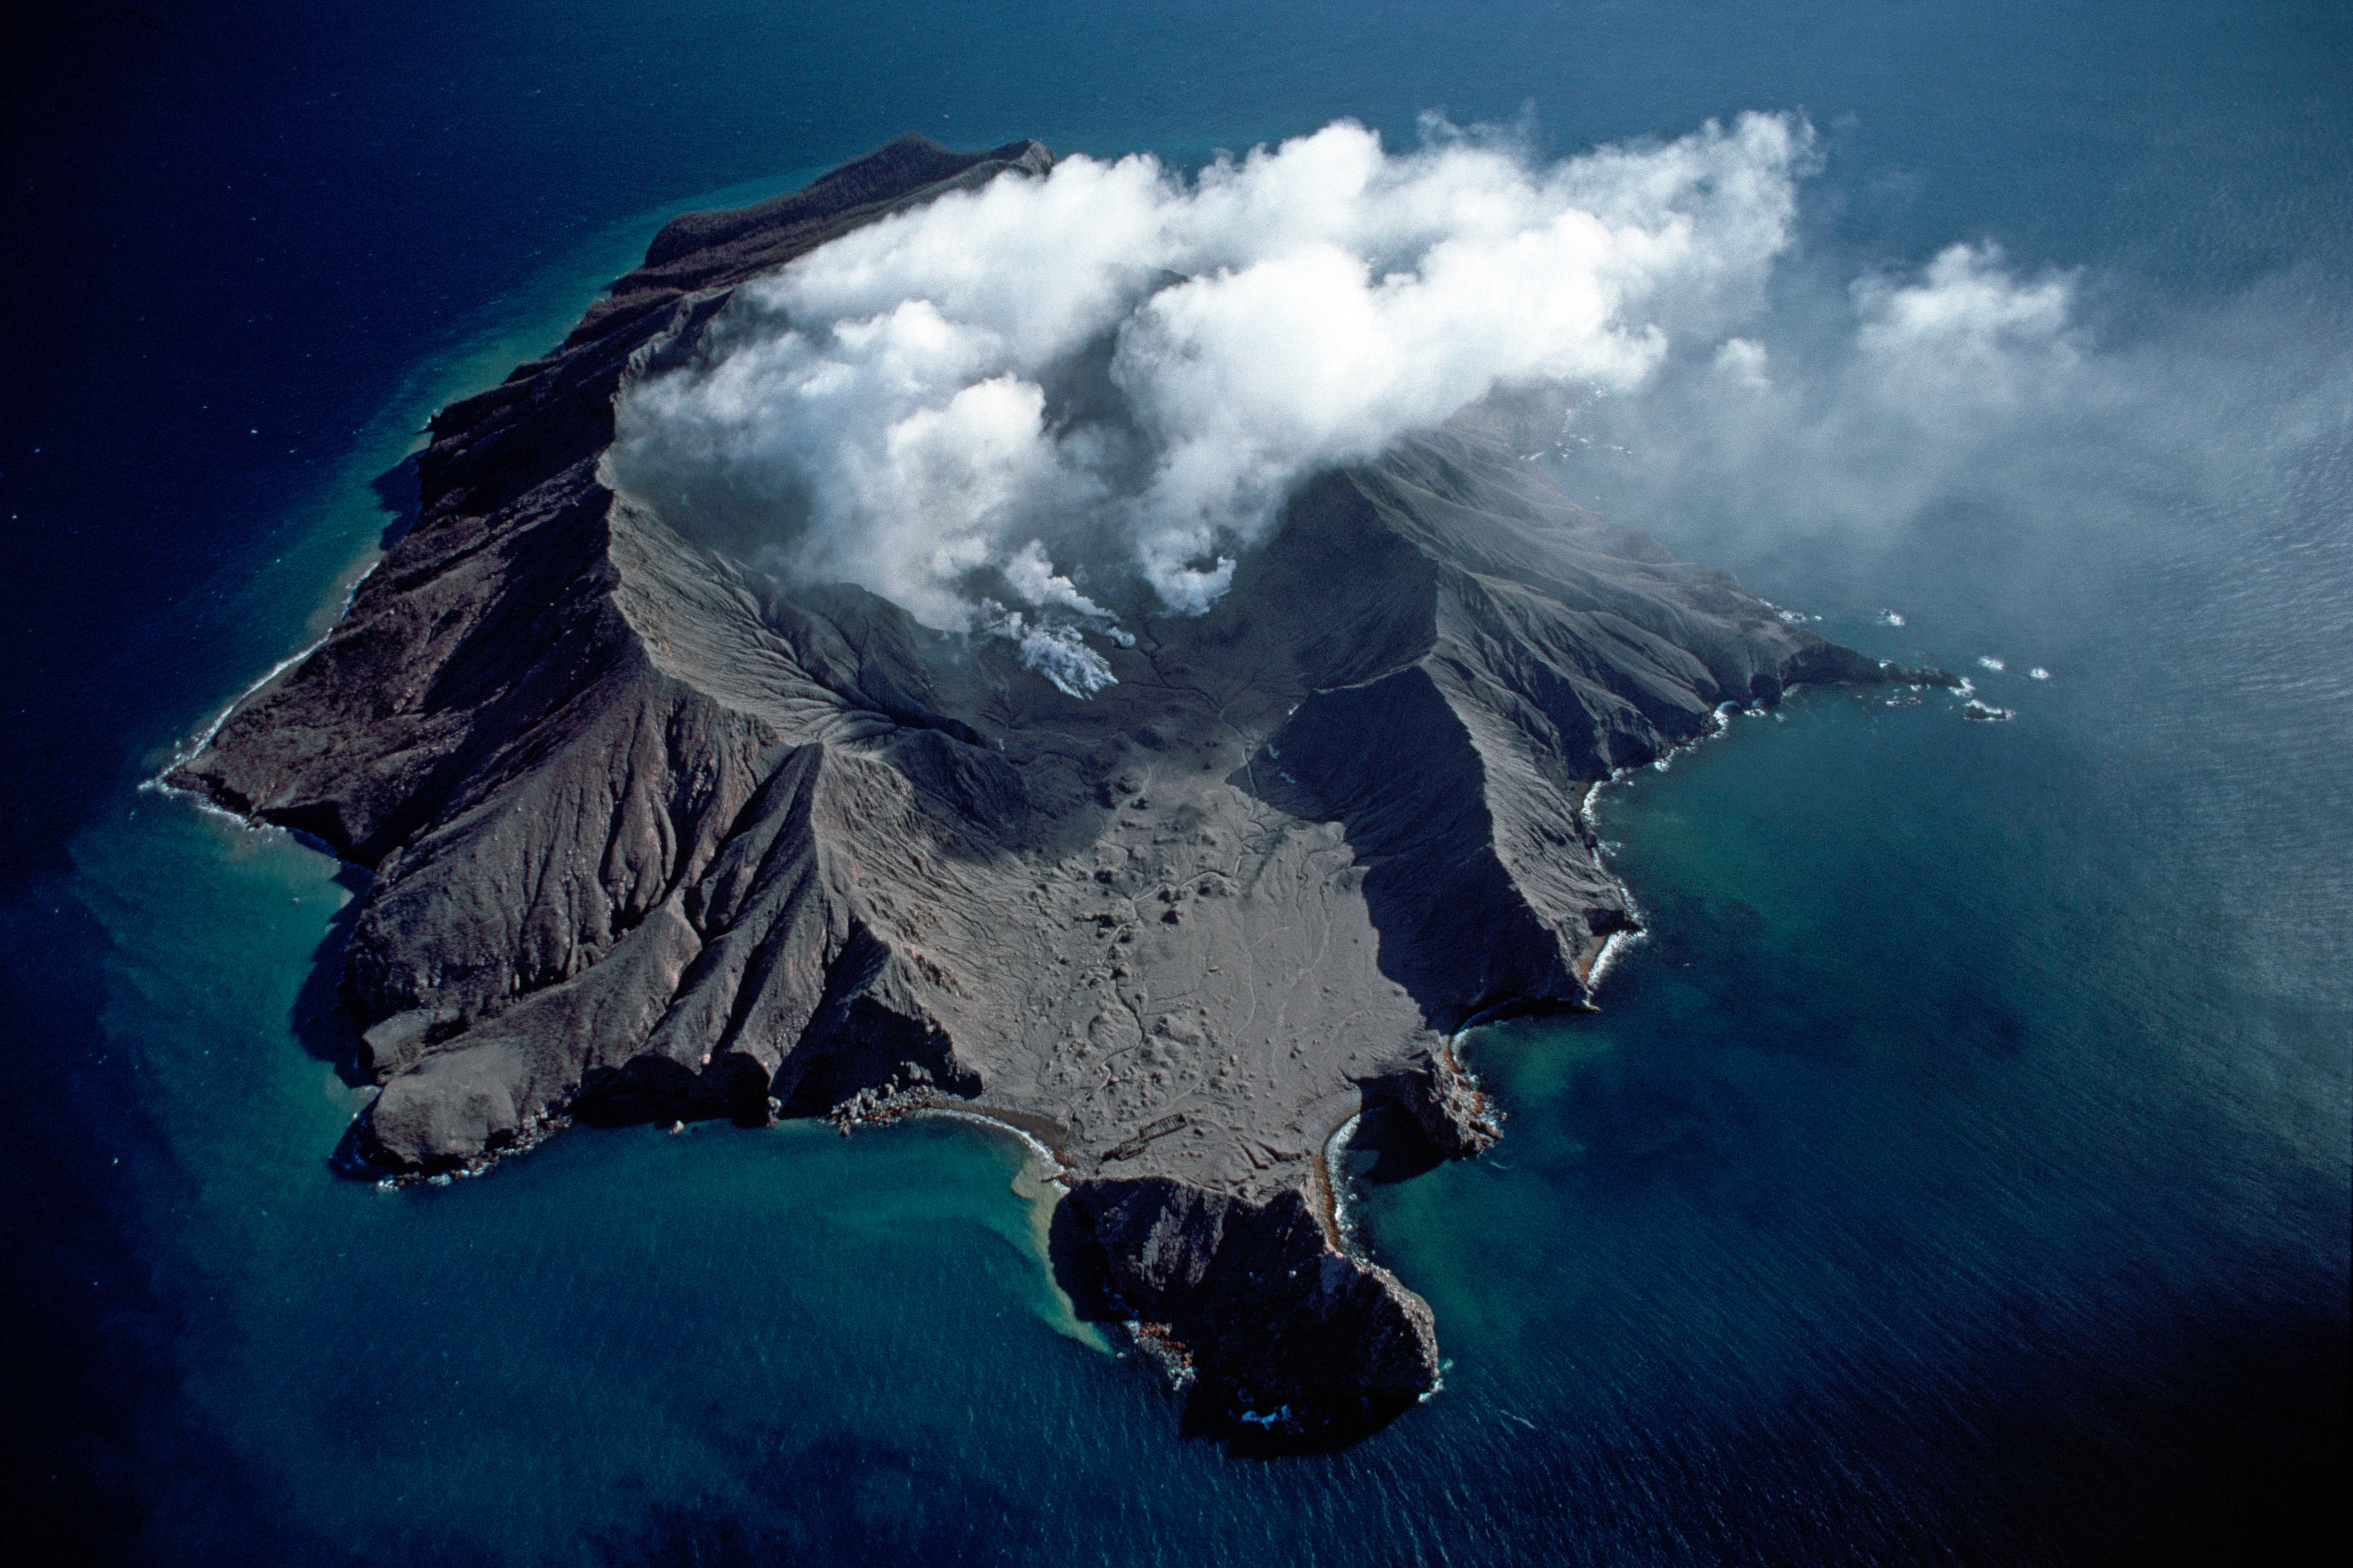 Volcano island. Остров с вулканом. Вулканический остров Уайт-Айленд. Вулкан Уайт-Айленд новая Зеландия. Липарские острова вулкан.